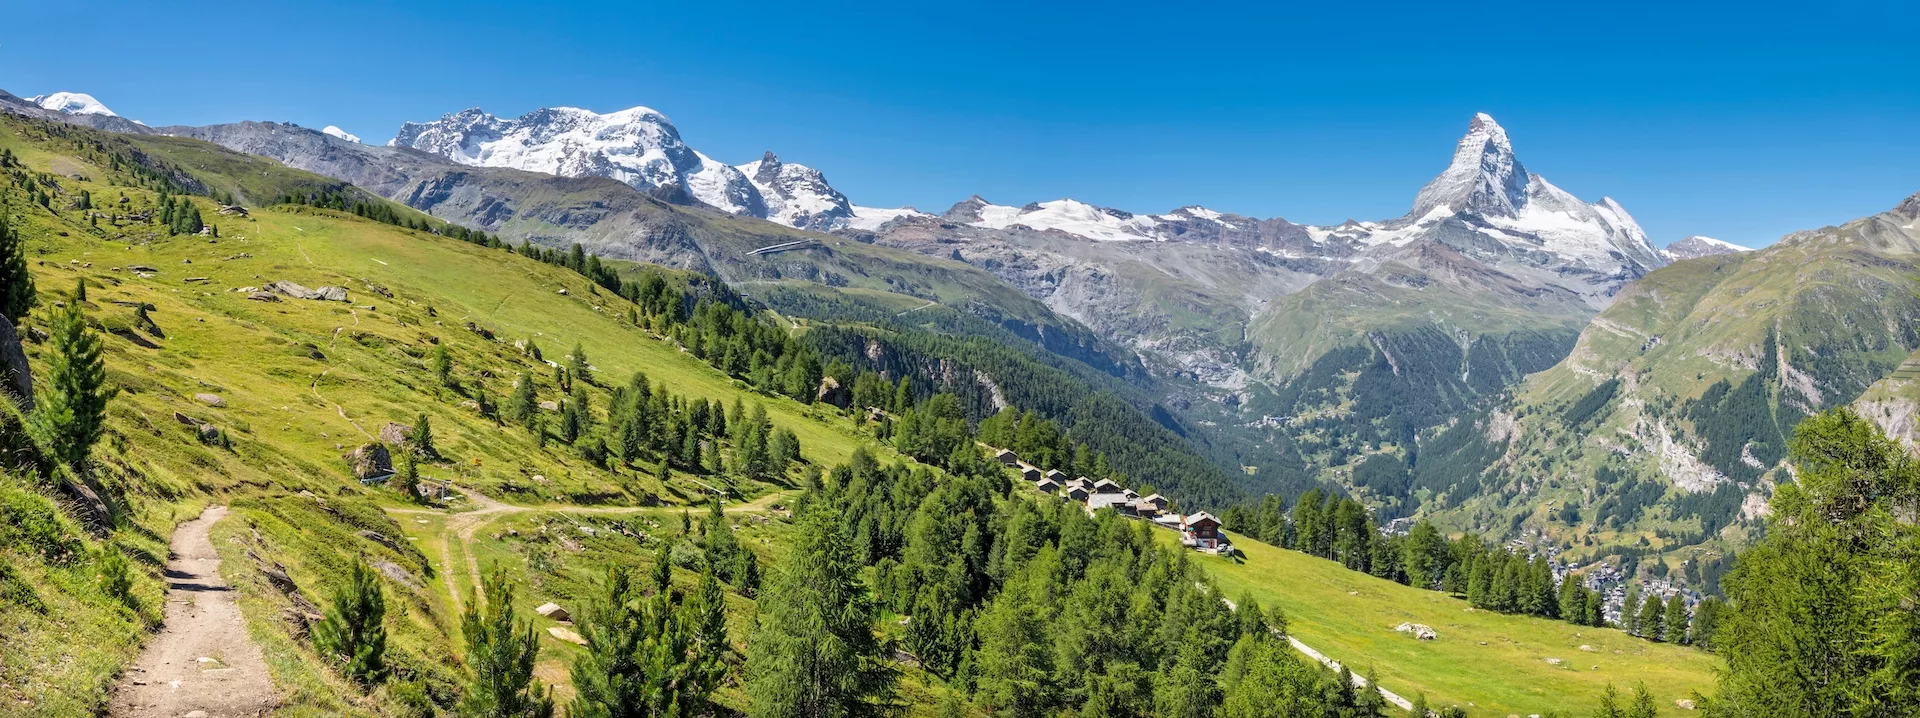 Il panorama delle Alpi svizzere di Walliser con le cime del Cervino e del Breithorn